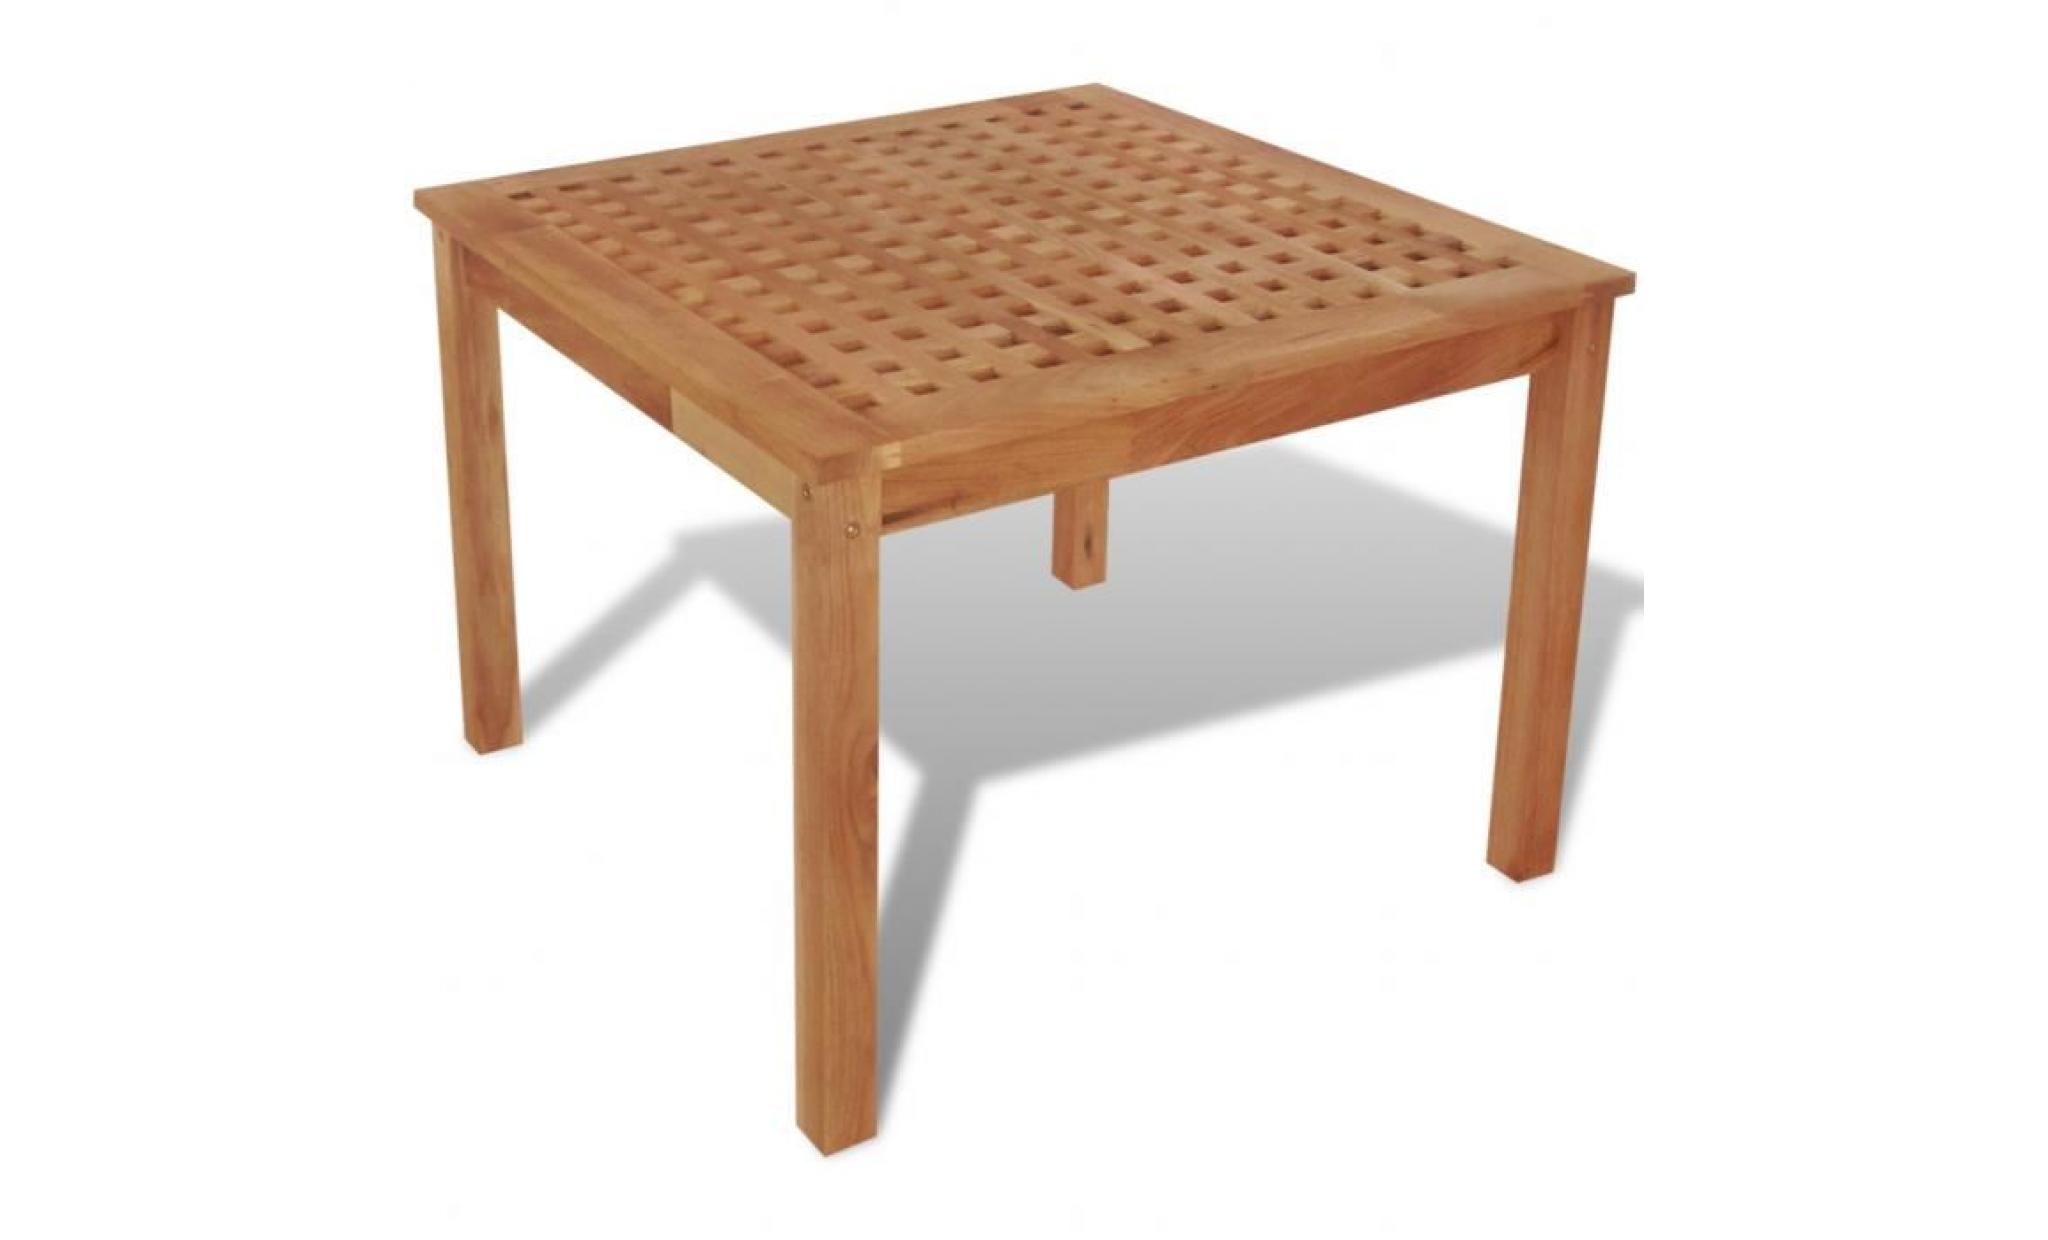 cette table auxiliaire carrée faite en bois de noyer massif sera un ajout unique à votre maison.